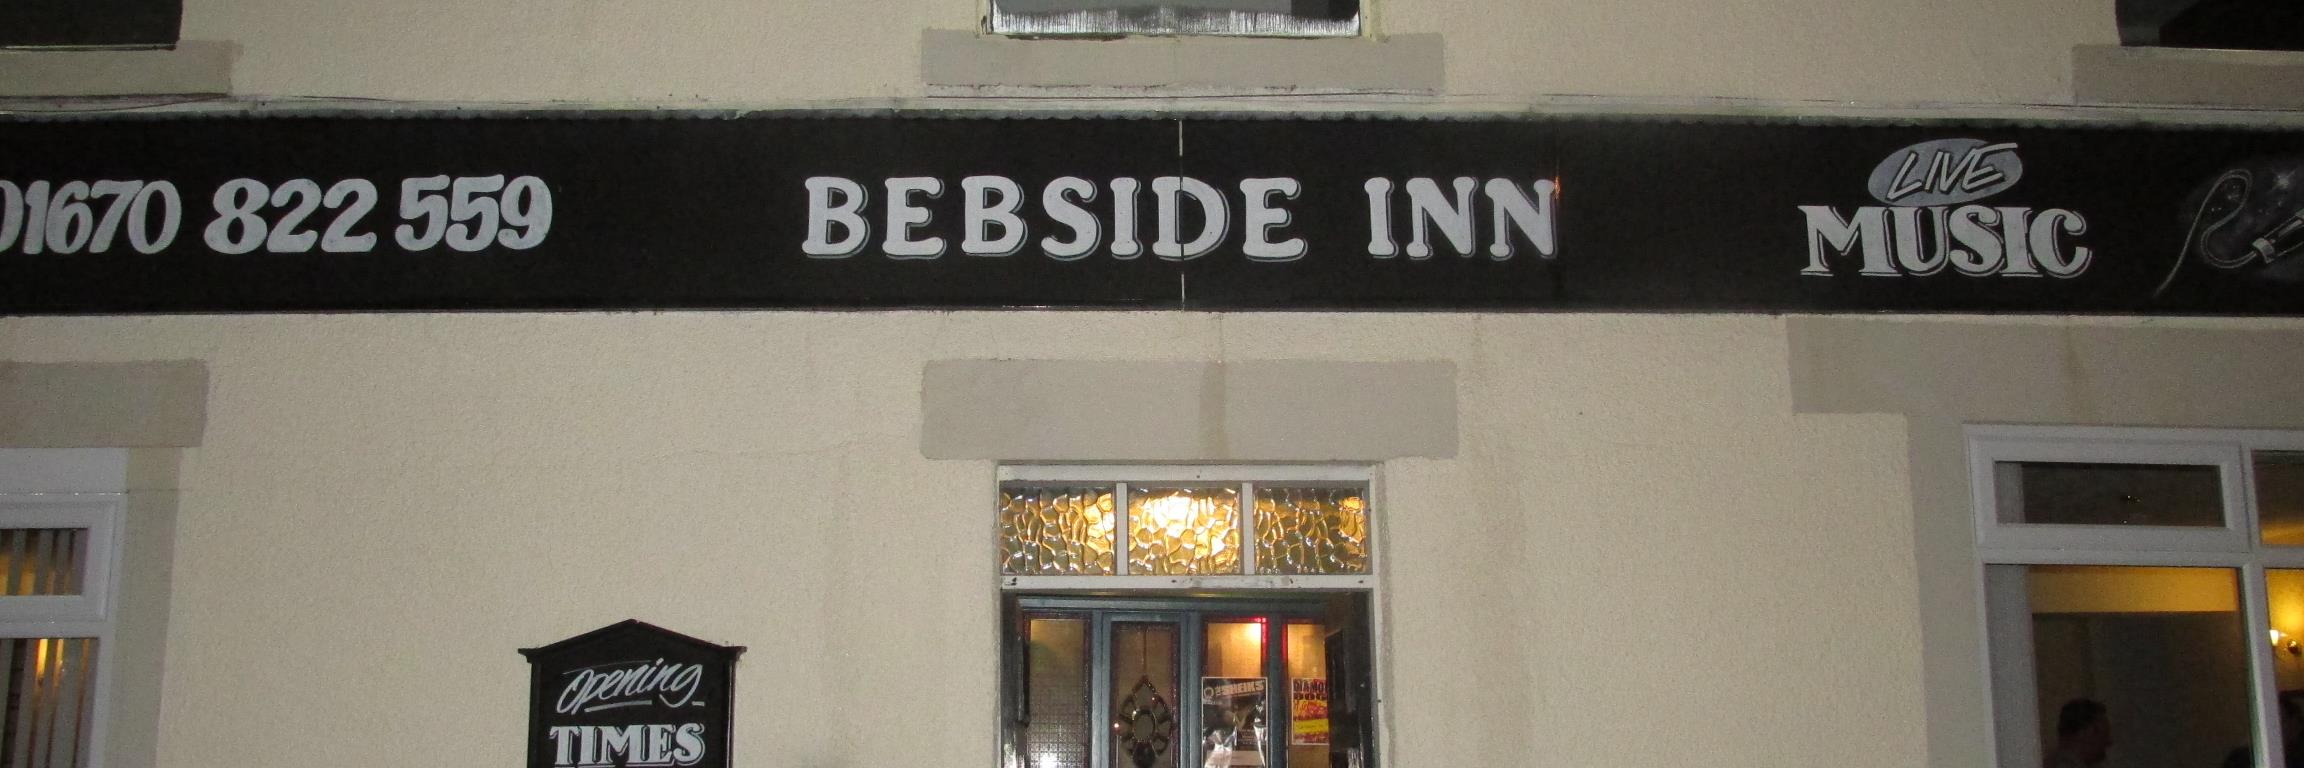 Bebside Inn